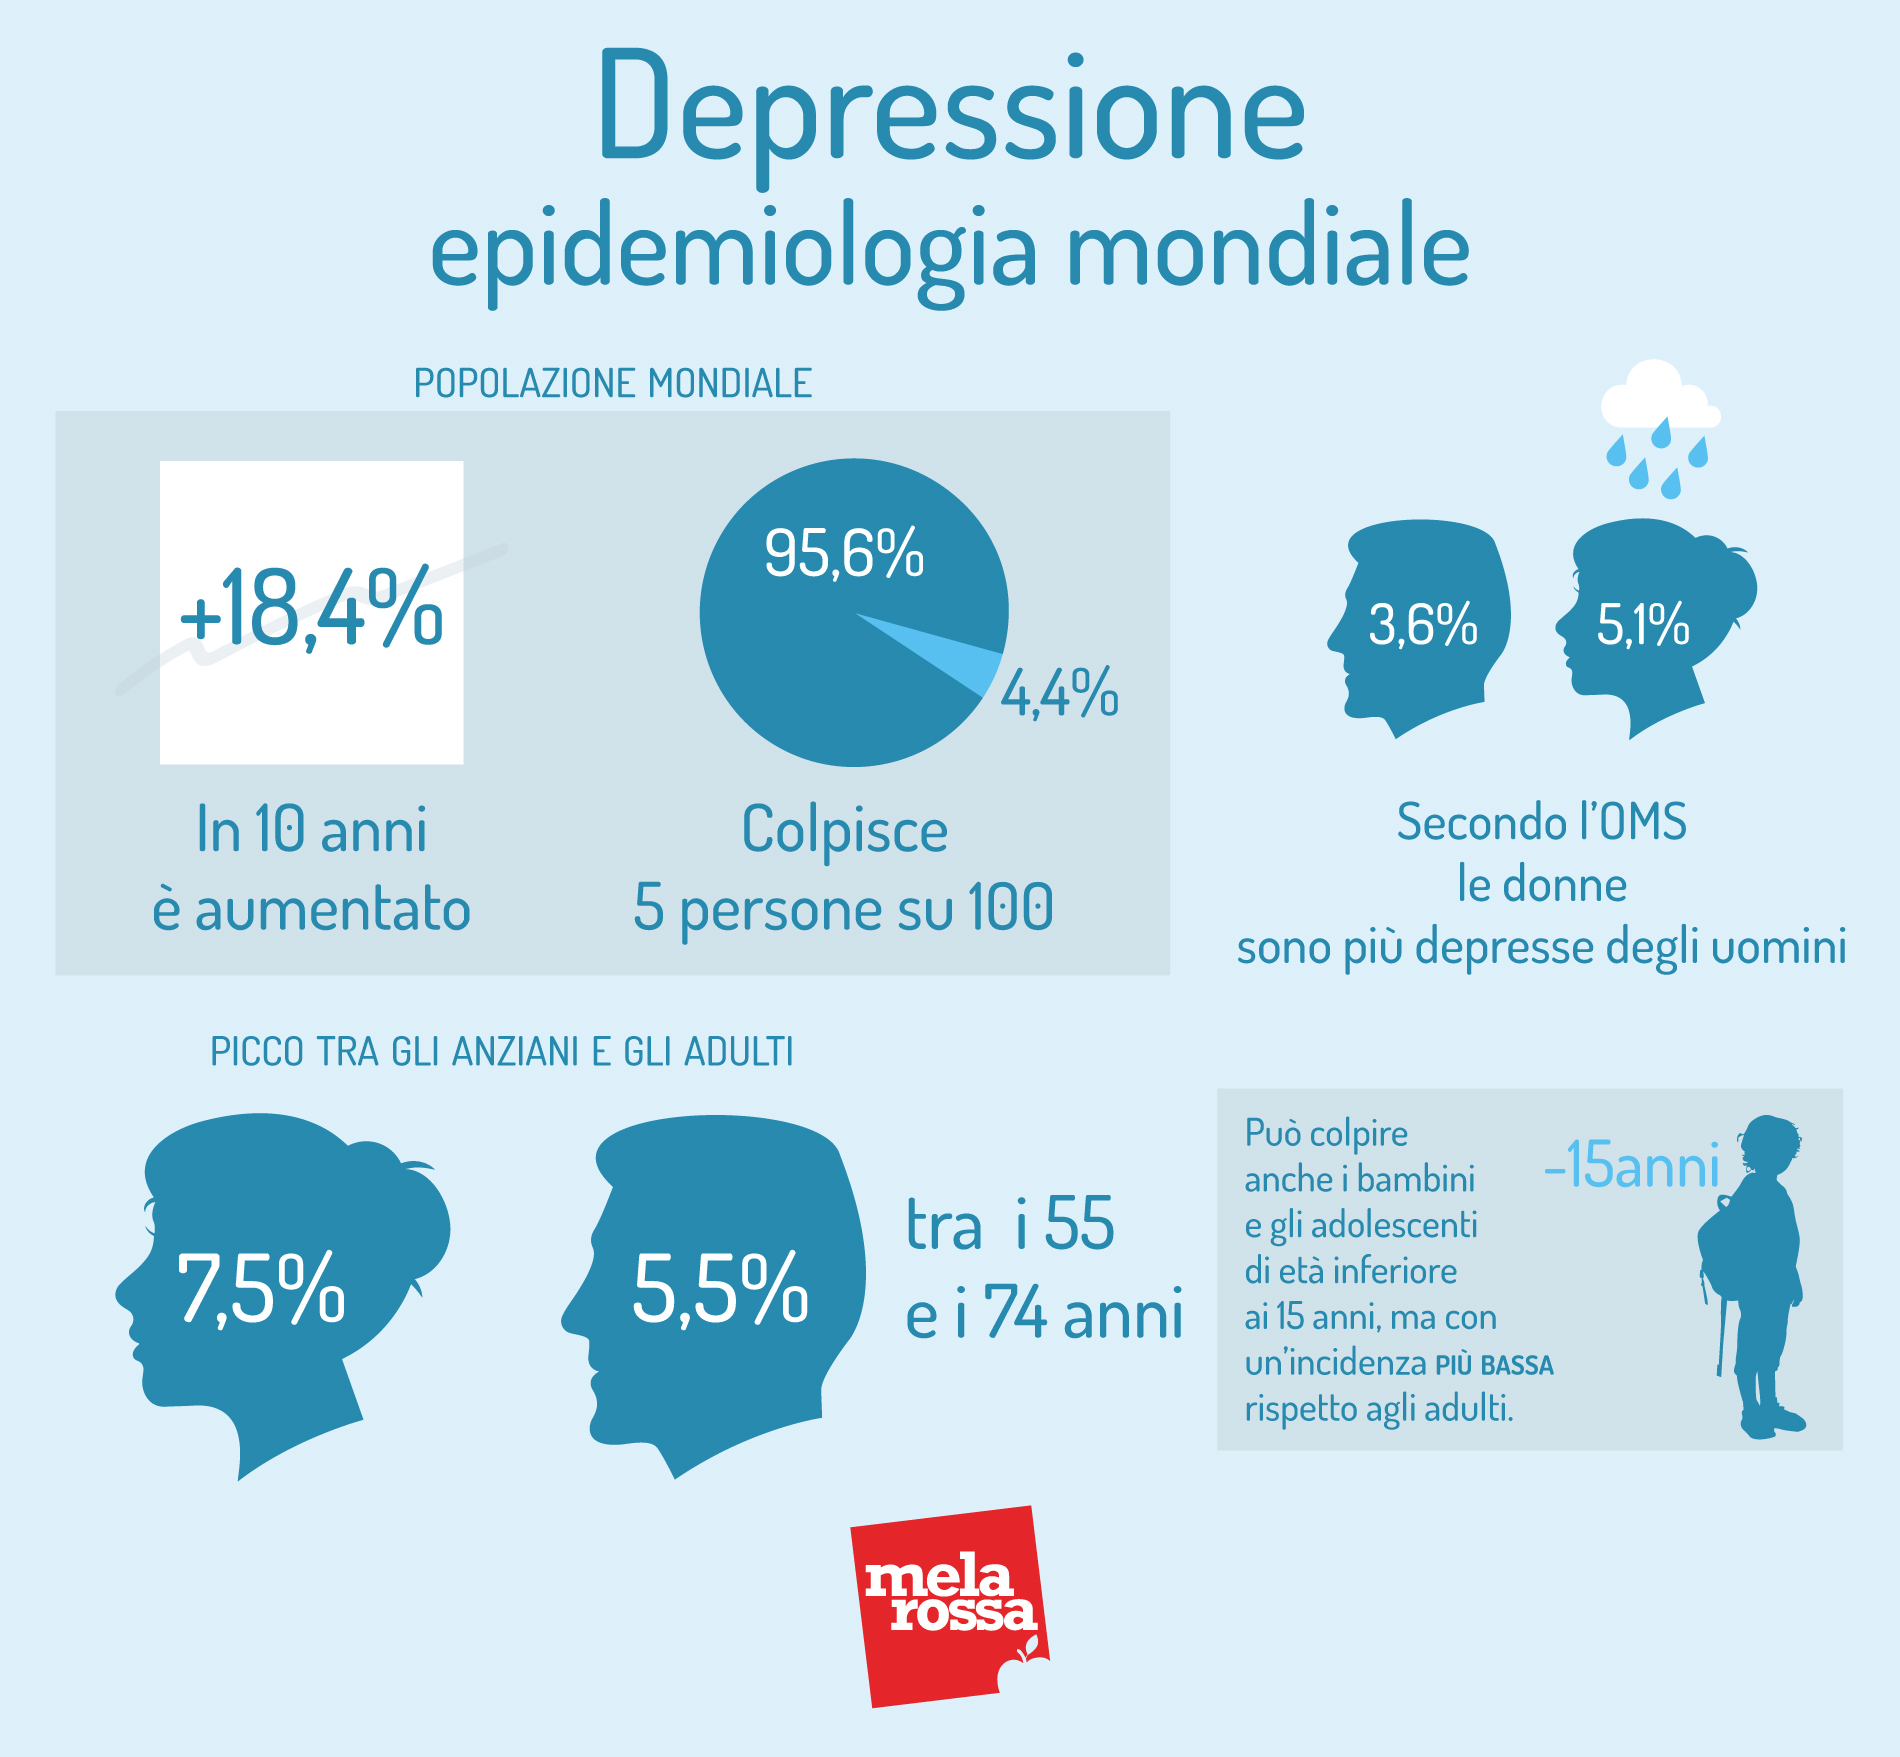 depressione: epidemiologia mondiale 